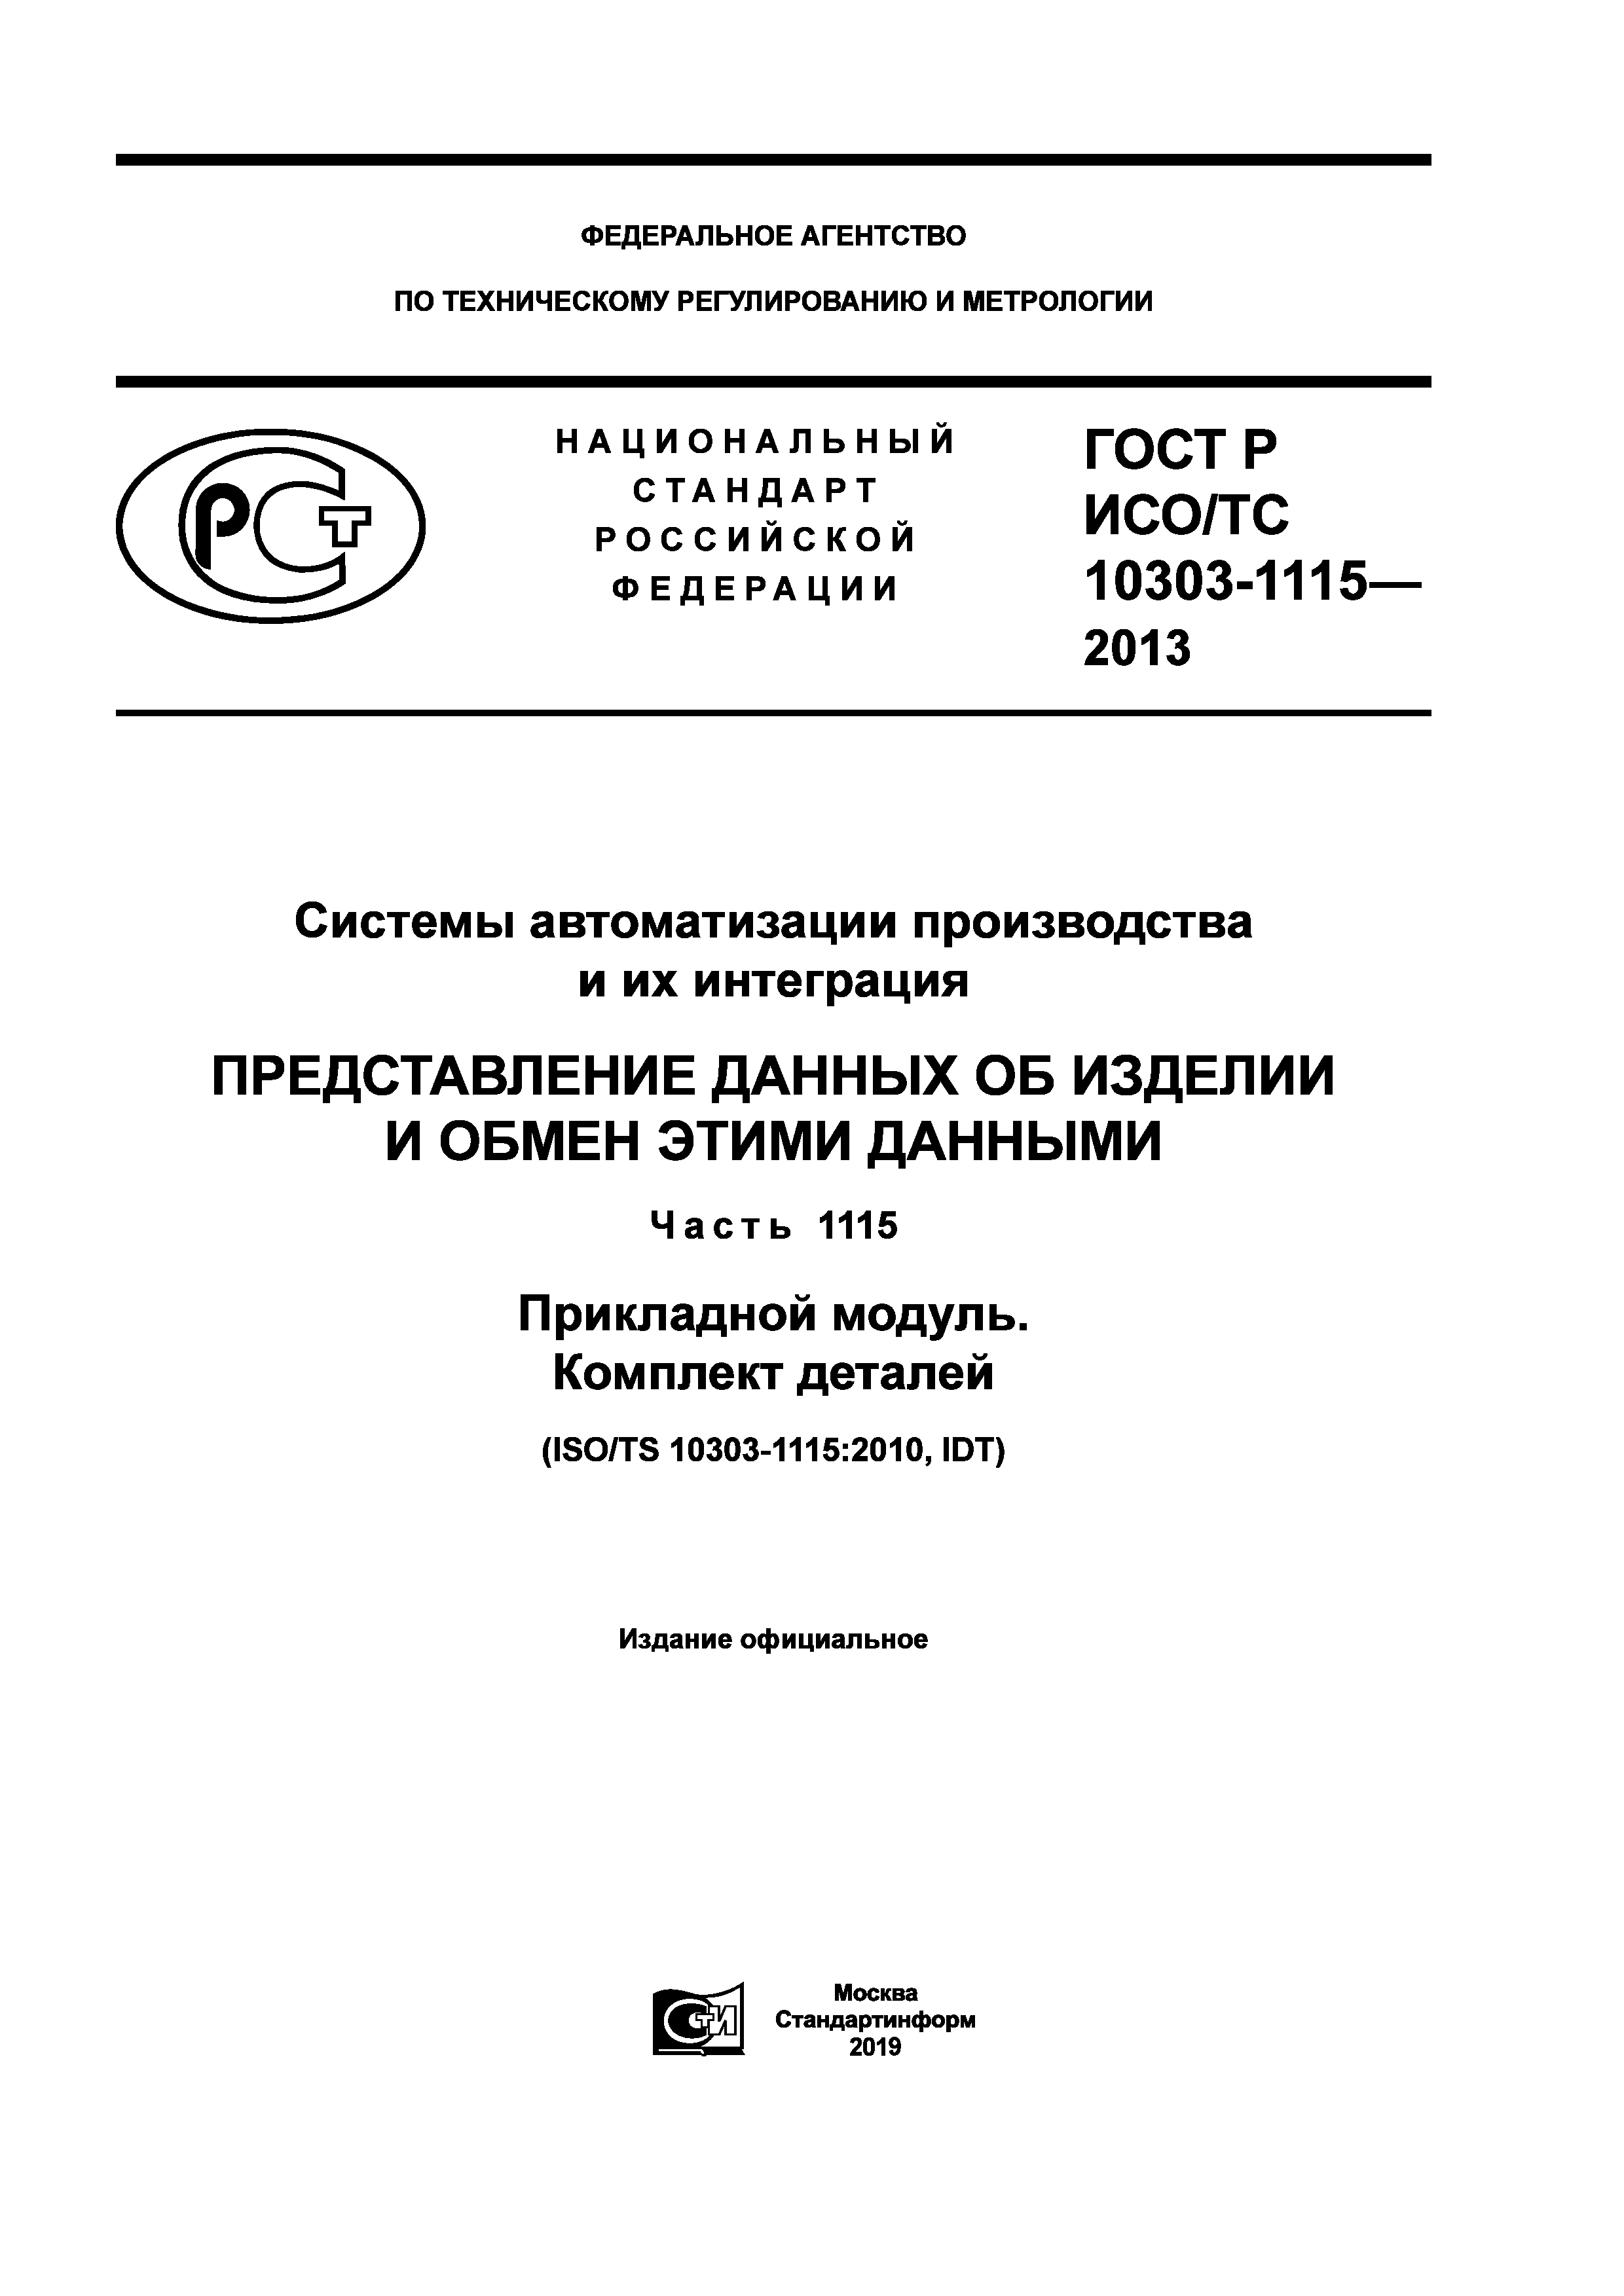 ГОСТ Р ИСО/ТС 10303-1115-2013